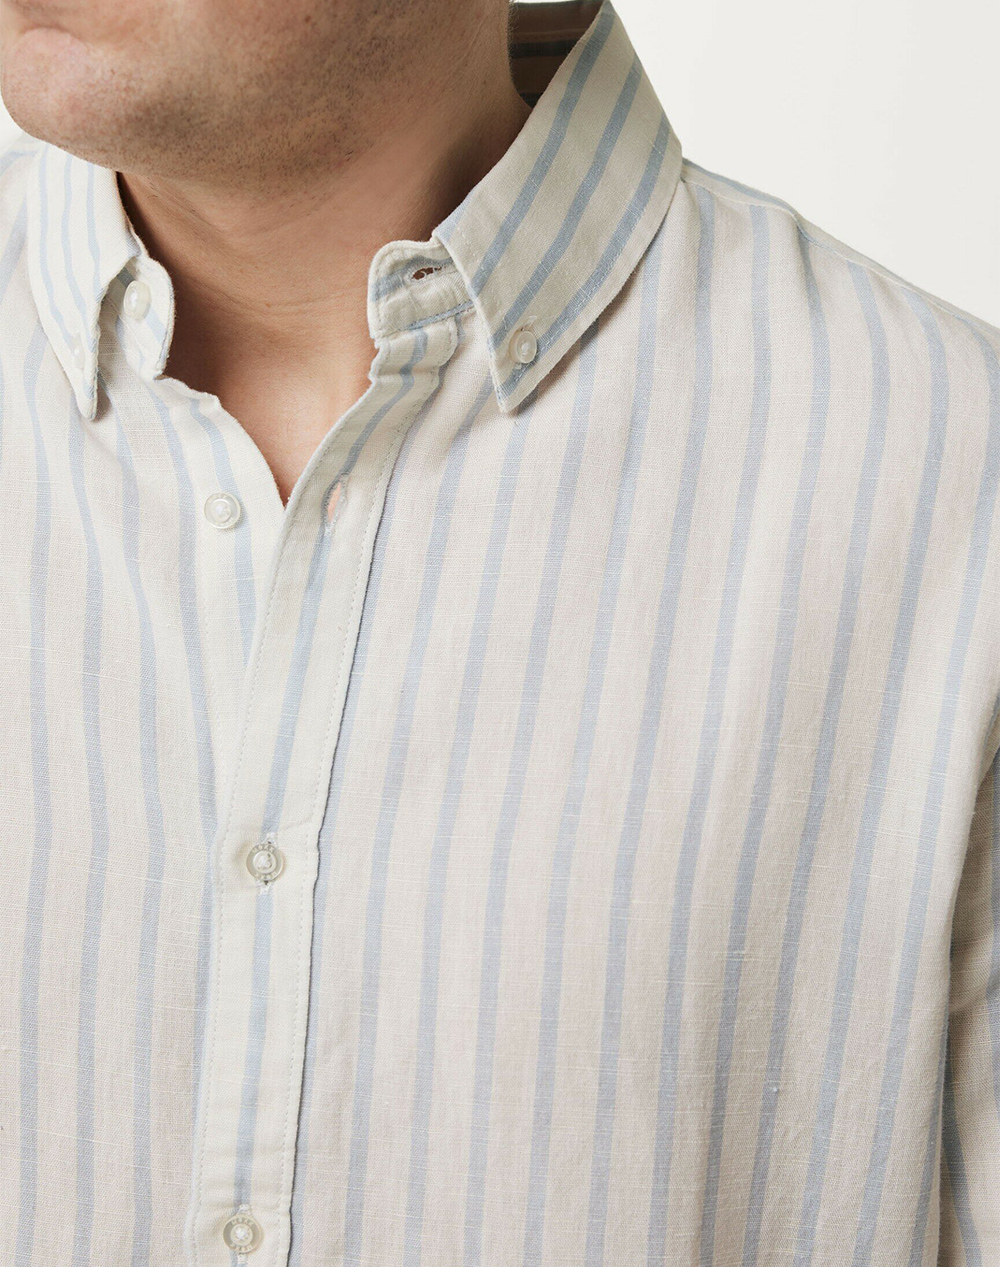 MEXX AIDEN Basic striped linen shirt